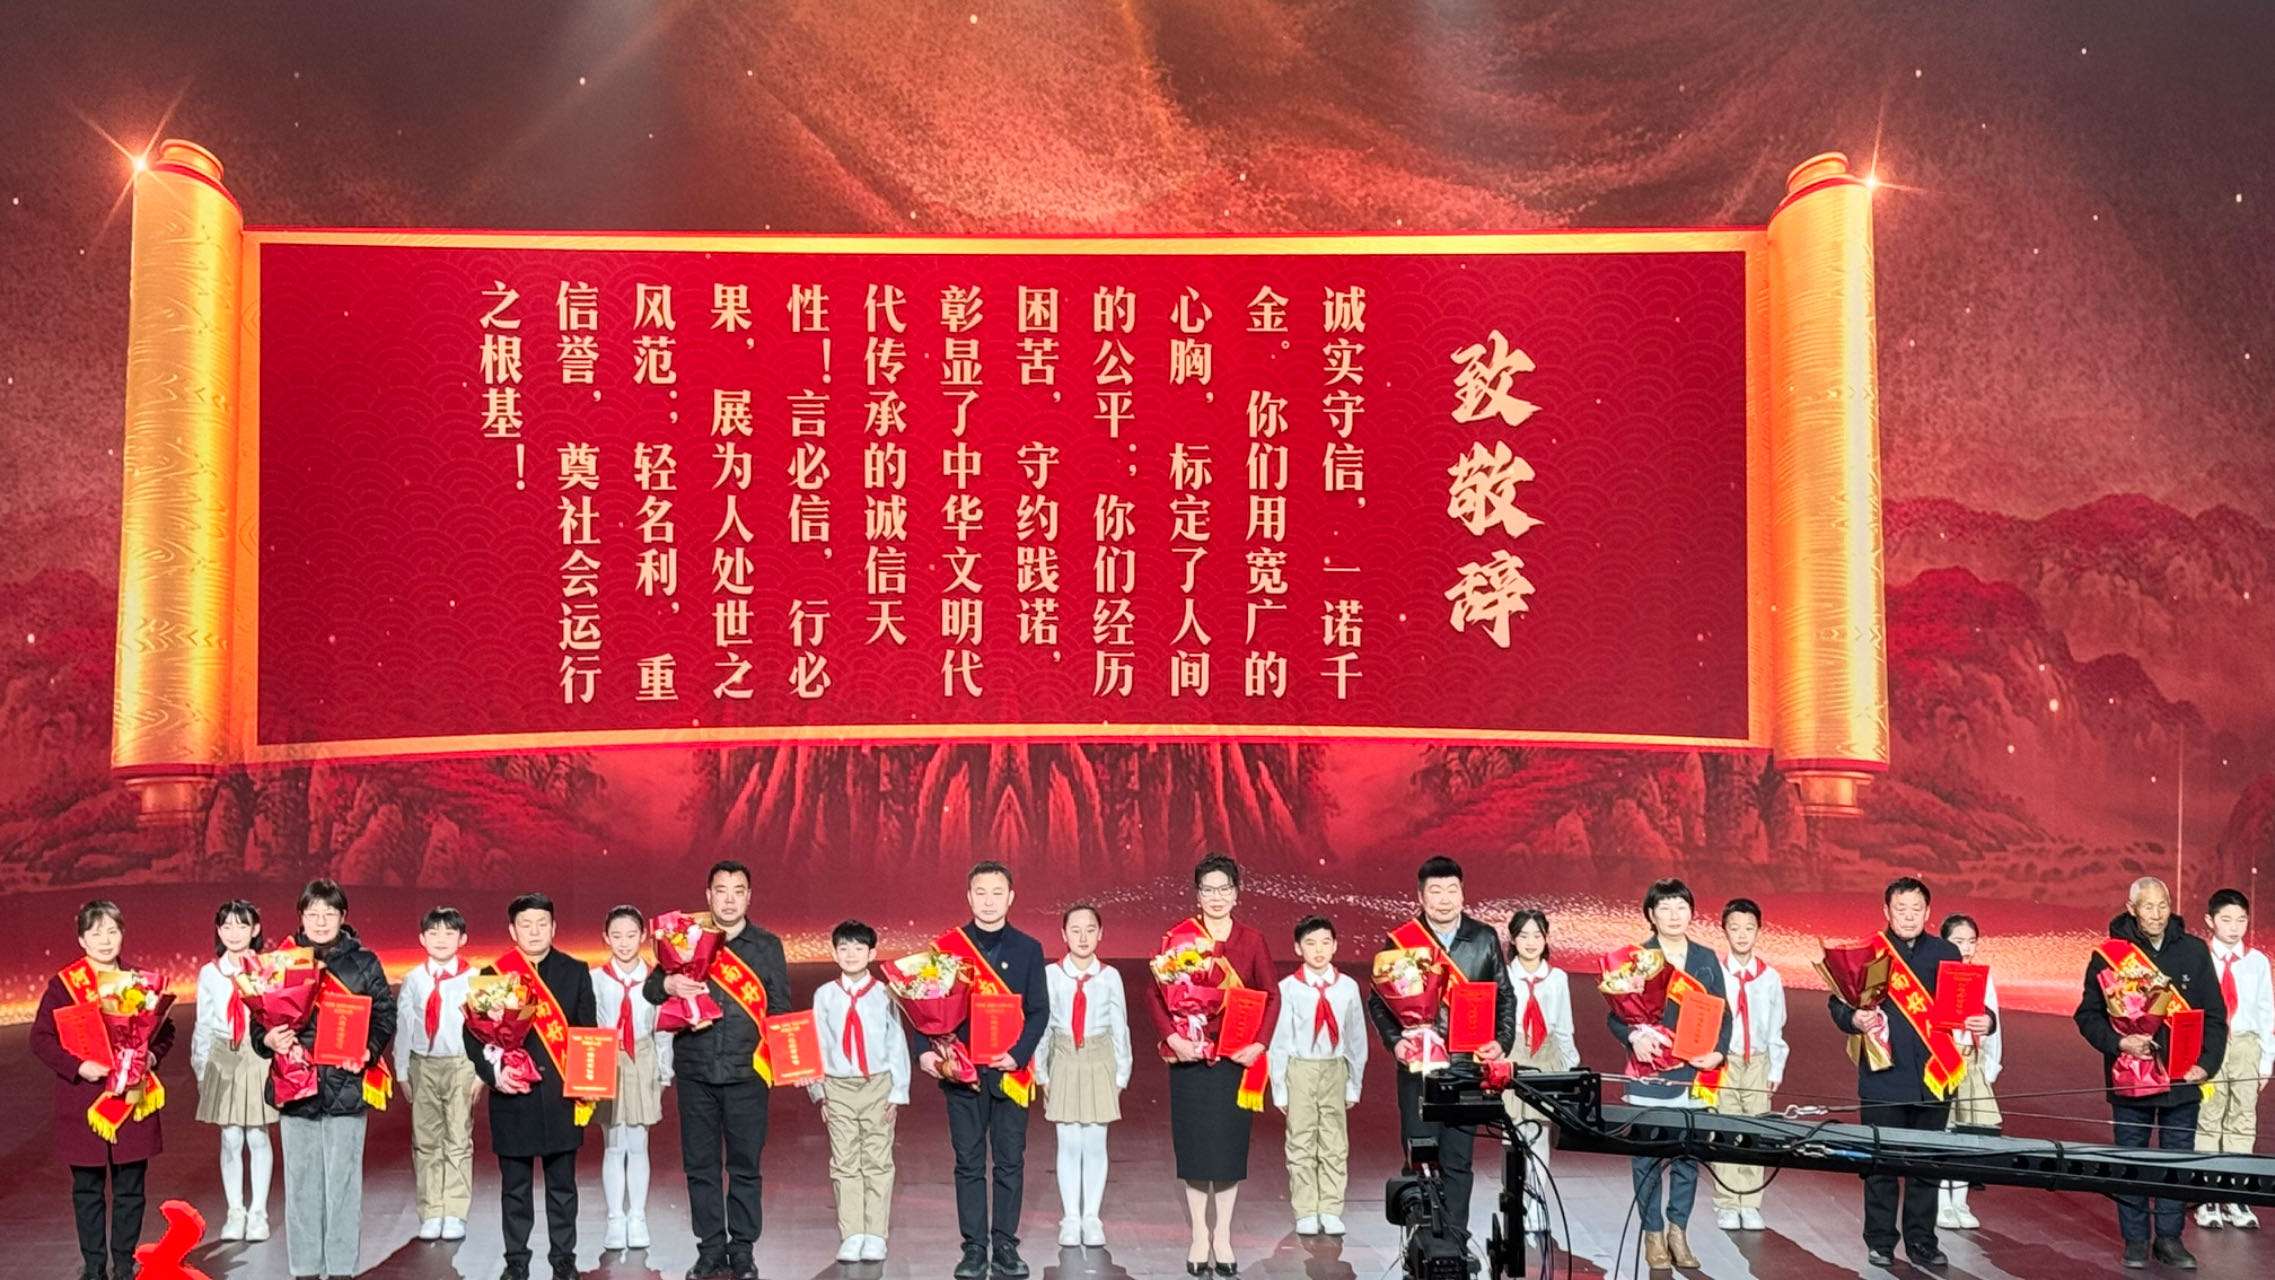 善良有力量 平凡写不凡 2023年度“河南好人榜”发布活动在郑州举行